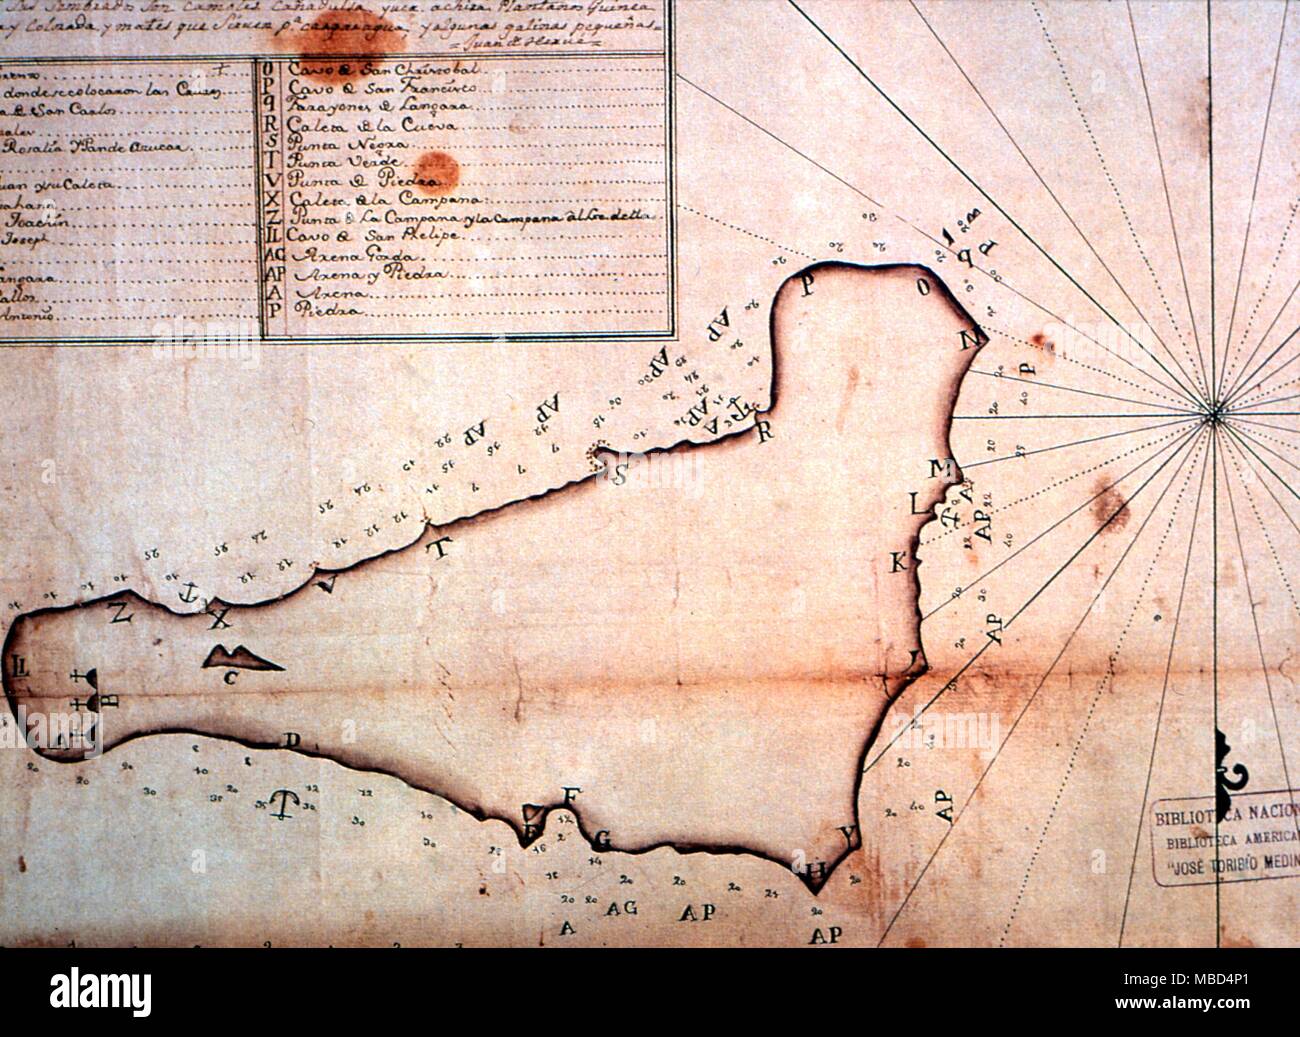 L'île de Pâques - premières cartes - reproductions lithographiques du 18e siècle cartes marines de l'île de Pâques. Collection privée. - ©Charles Walker / Banque D'Images